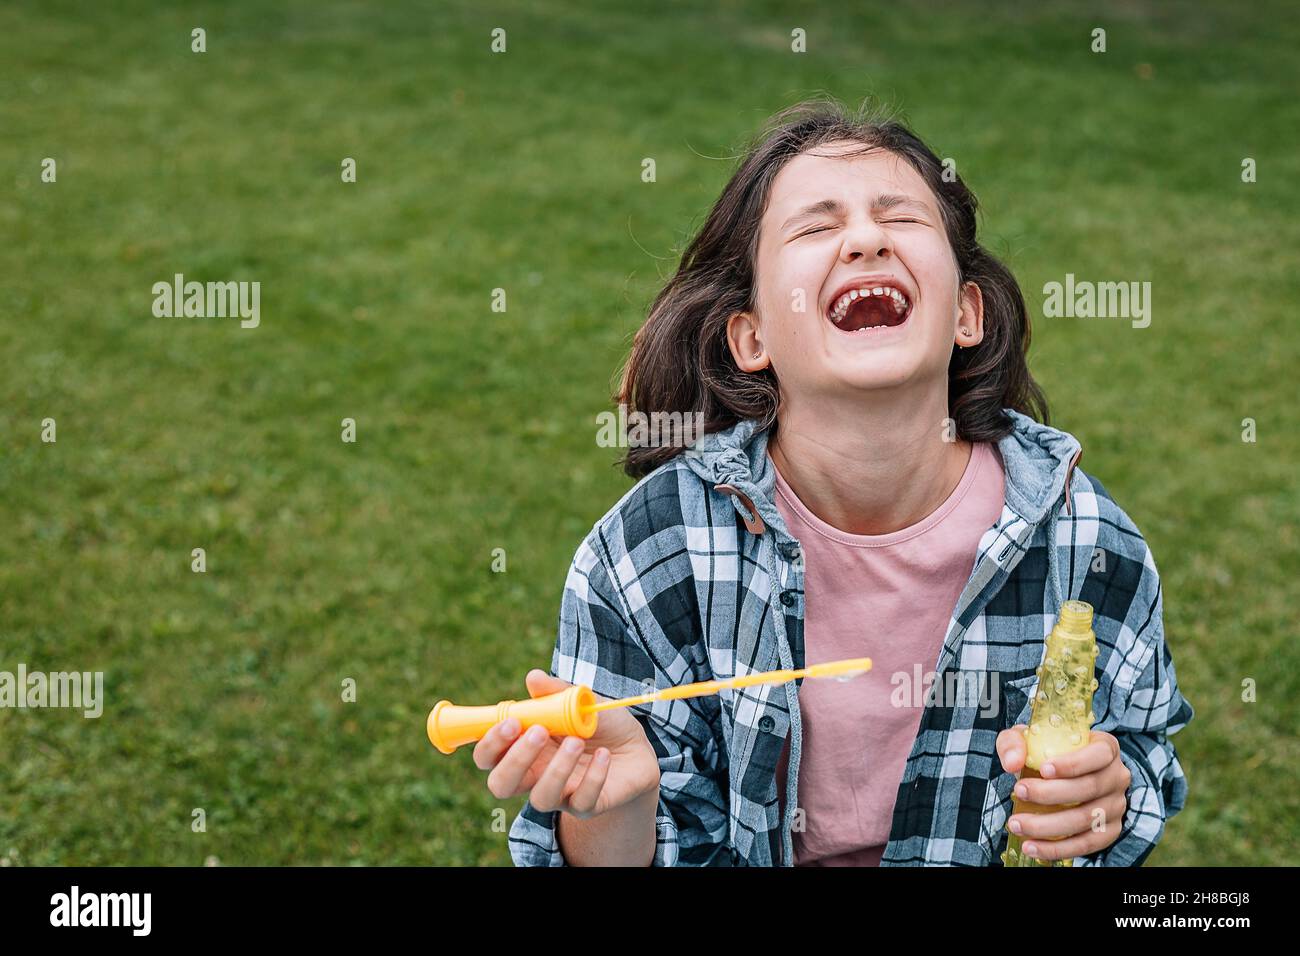 Portrait d'une jolie fille brune s'amusant dans un parc d'été.Rire de l'école de race blanche avec des bulles de savon.Bonne enfance.Po Banque D'Images